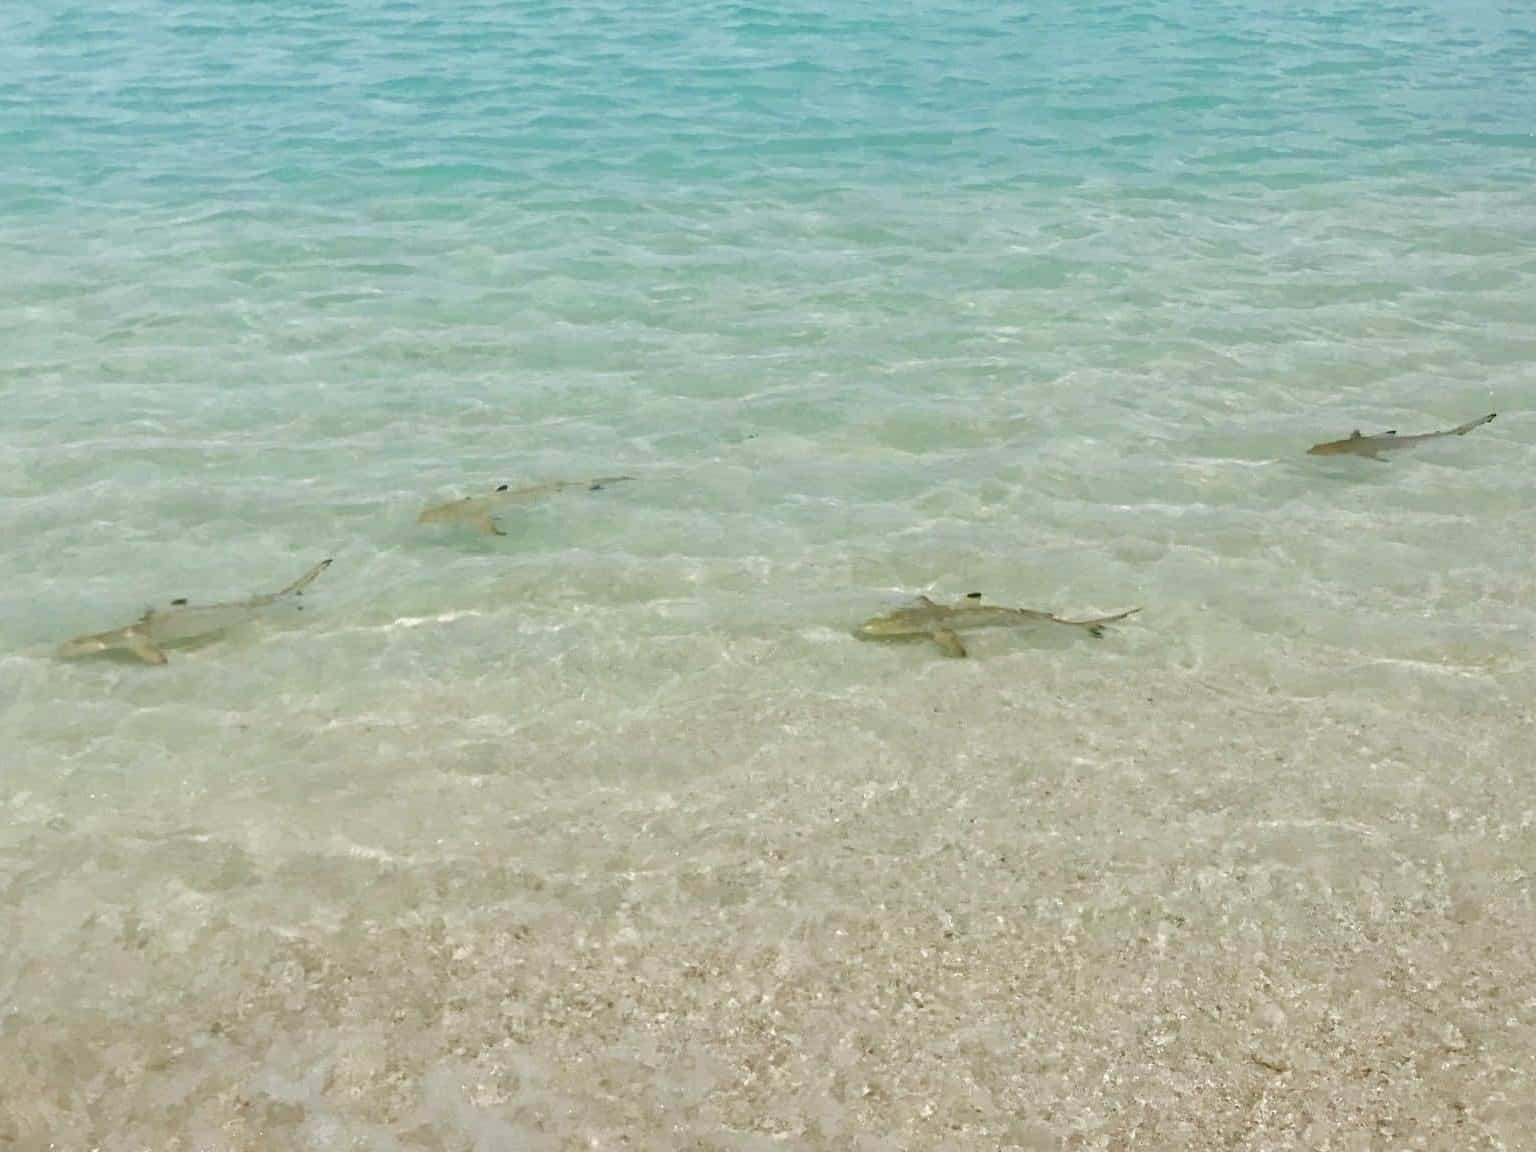 Haie auf den Malediven – Welche Arten gibt es im Reich der Inseln?